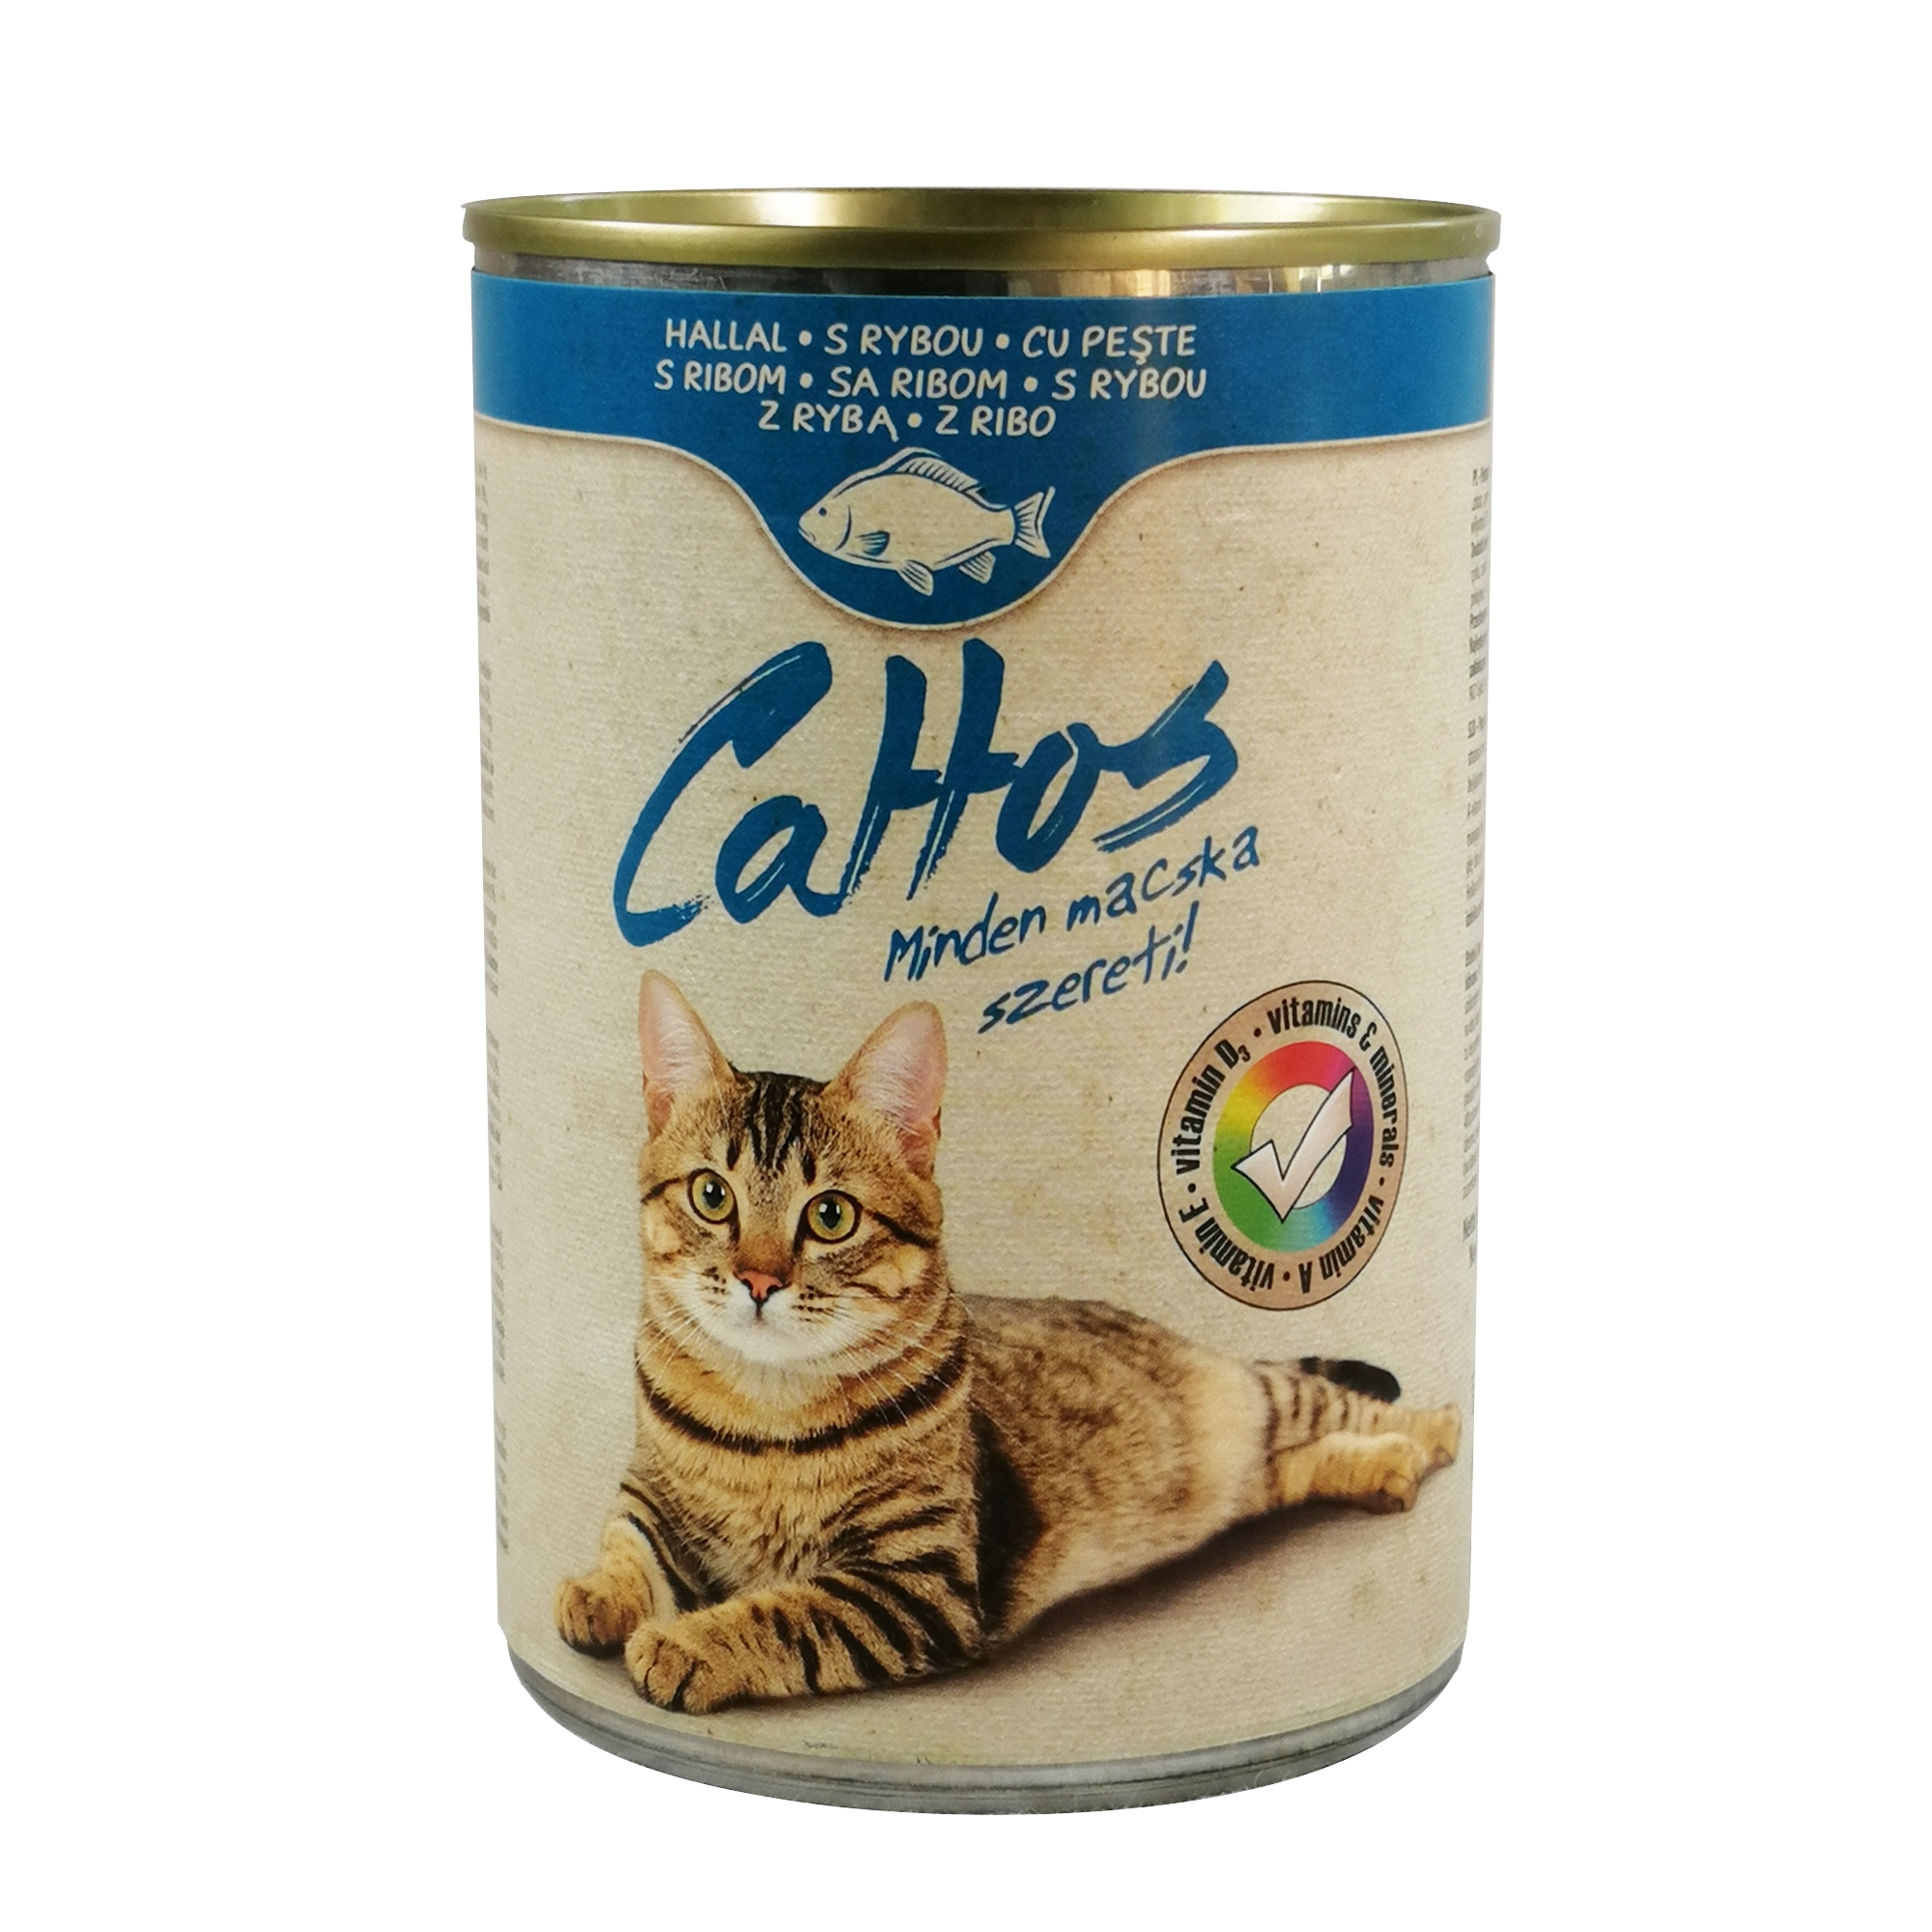 Conserva Cat Cattos 415 g Peste petmart